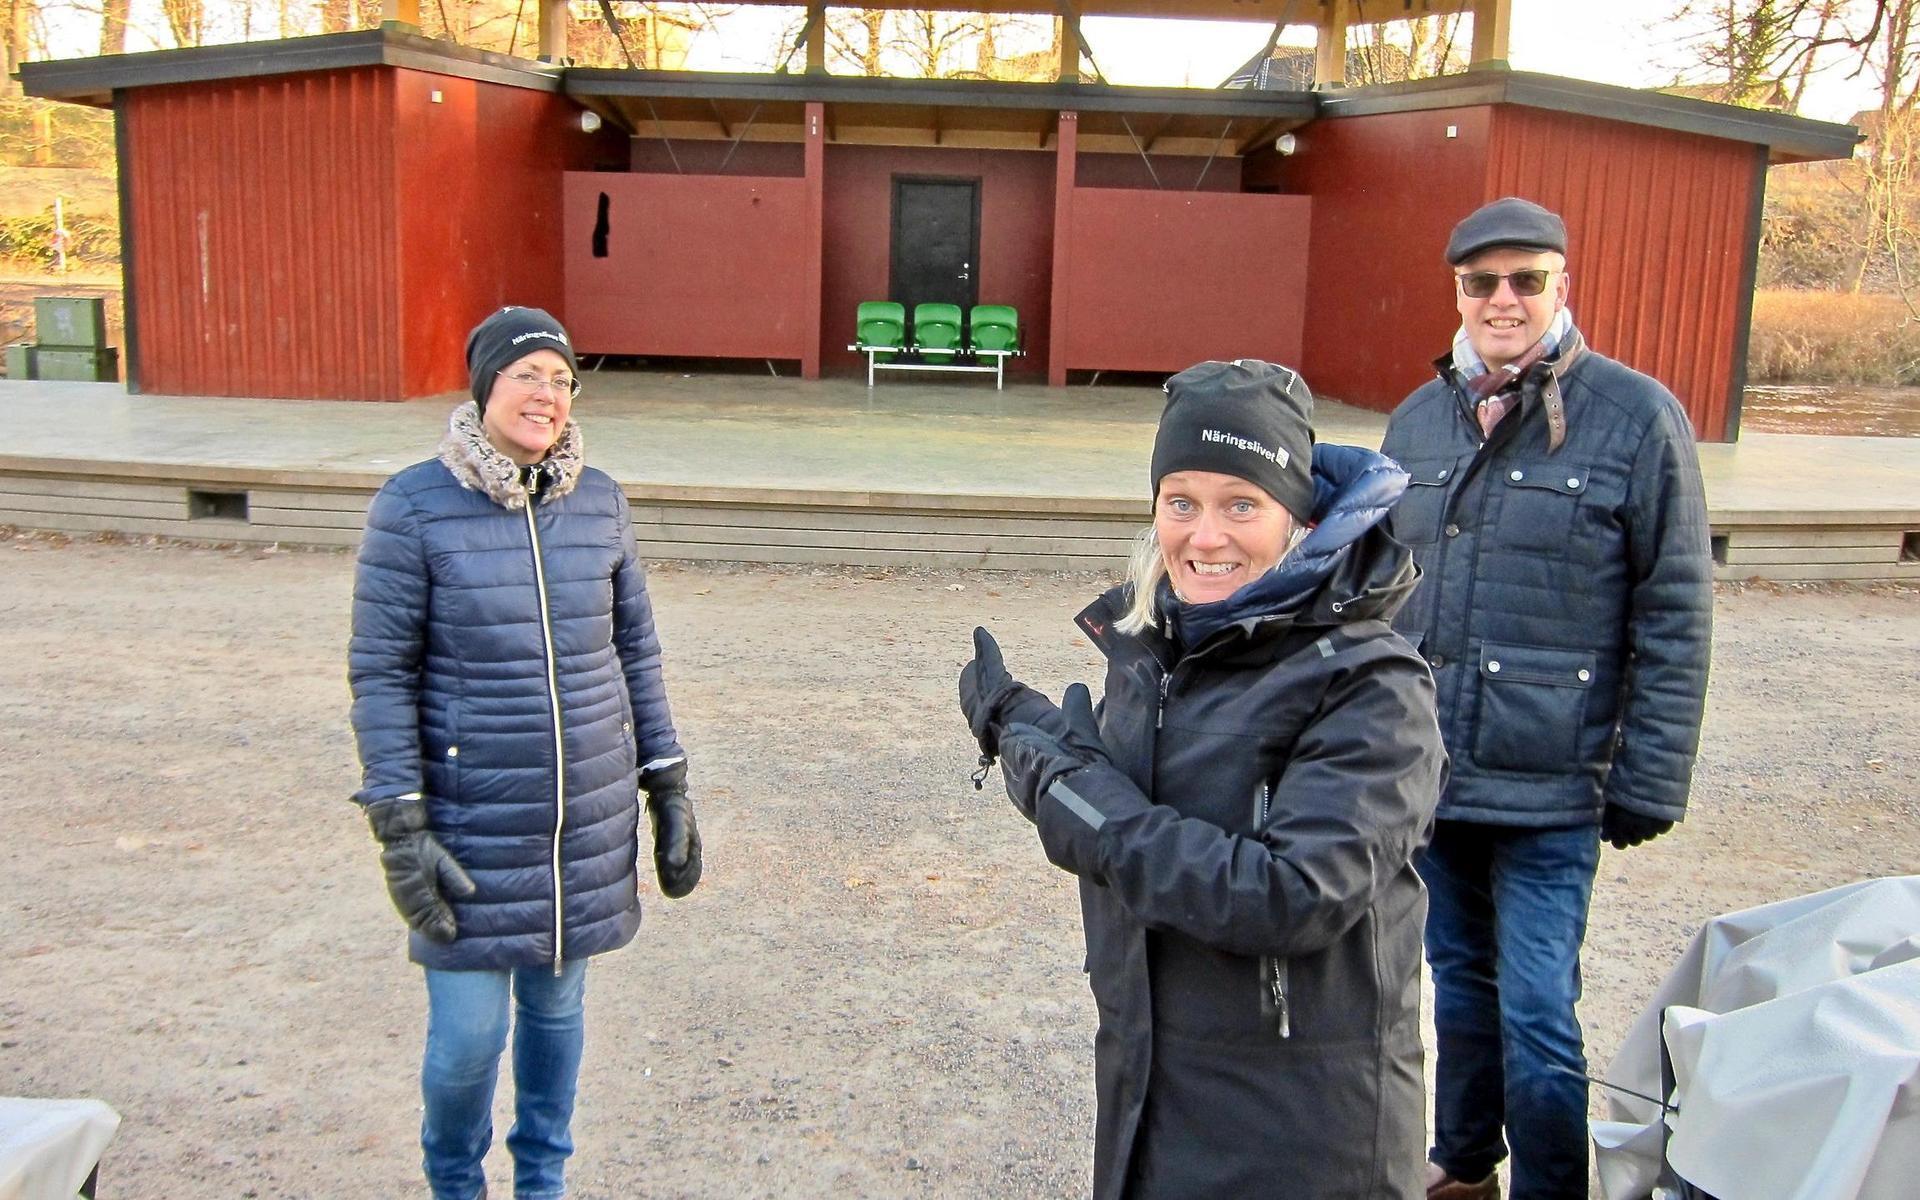 Lotta Peltoarvo, Magnus Wernersson och Marinette Larsson från Näringslivet Falkenberg arrangerar 2021 års Näringslivsdag på Vallarnas friluftsteater och flyttar fram dagen till den 18 augusti på grund av rådande pandemi.